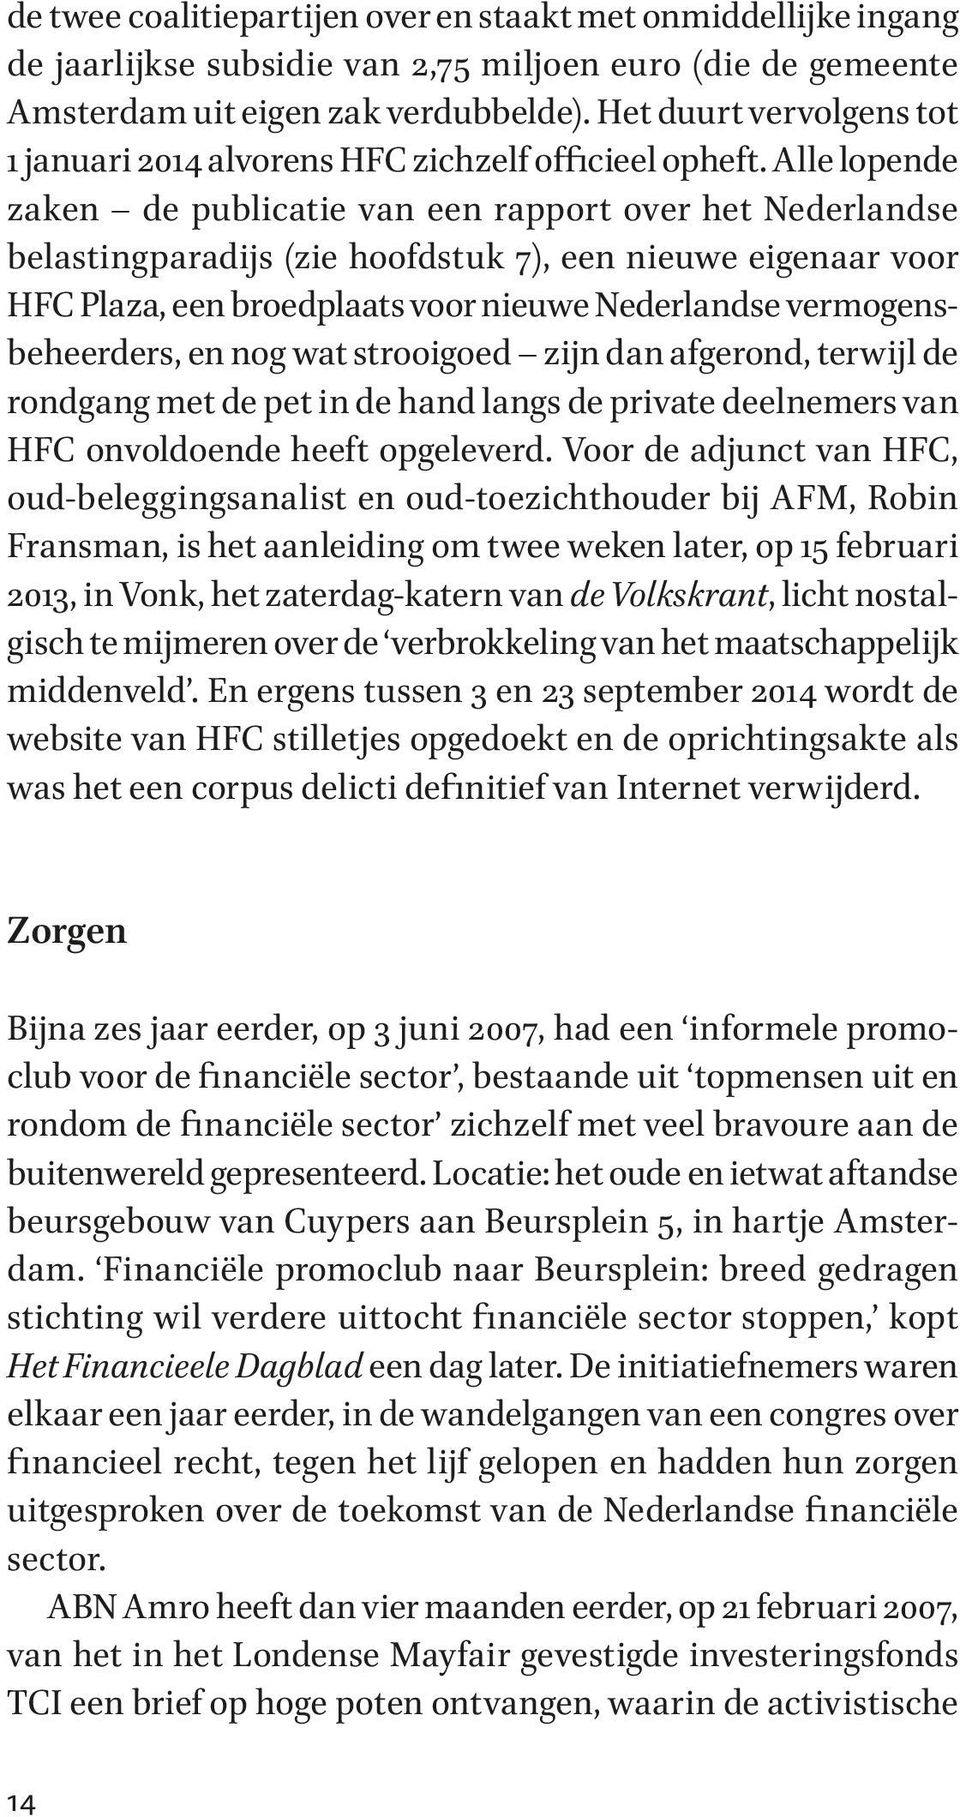 Alle lopende zaken de publicatie van een rapport over het Nederlandse belastingparadijs (zie hoofdstuk 7), een nieuwe eigenaar voor HFC Plaza, een broedplaats voor nieuwe Nederlandse